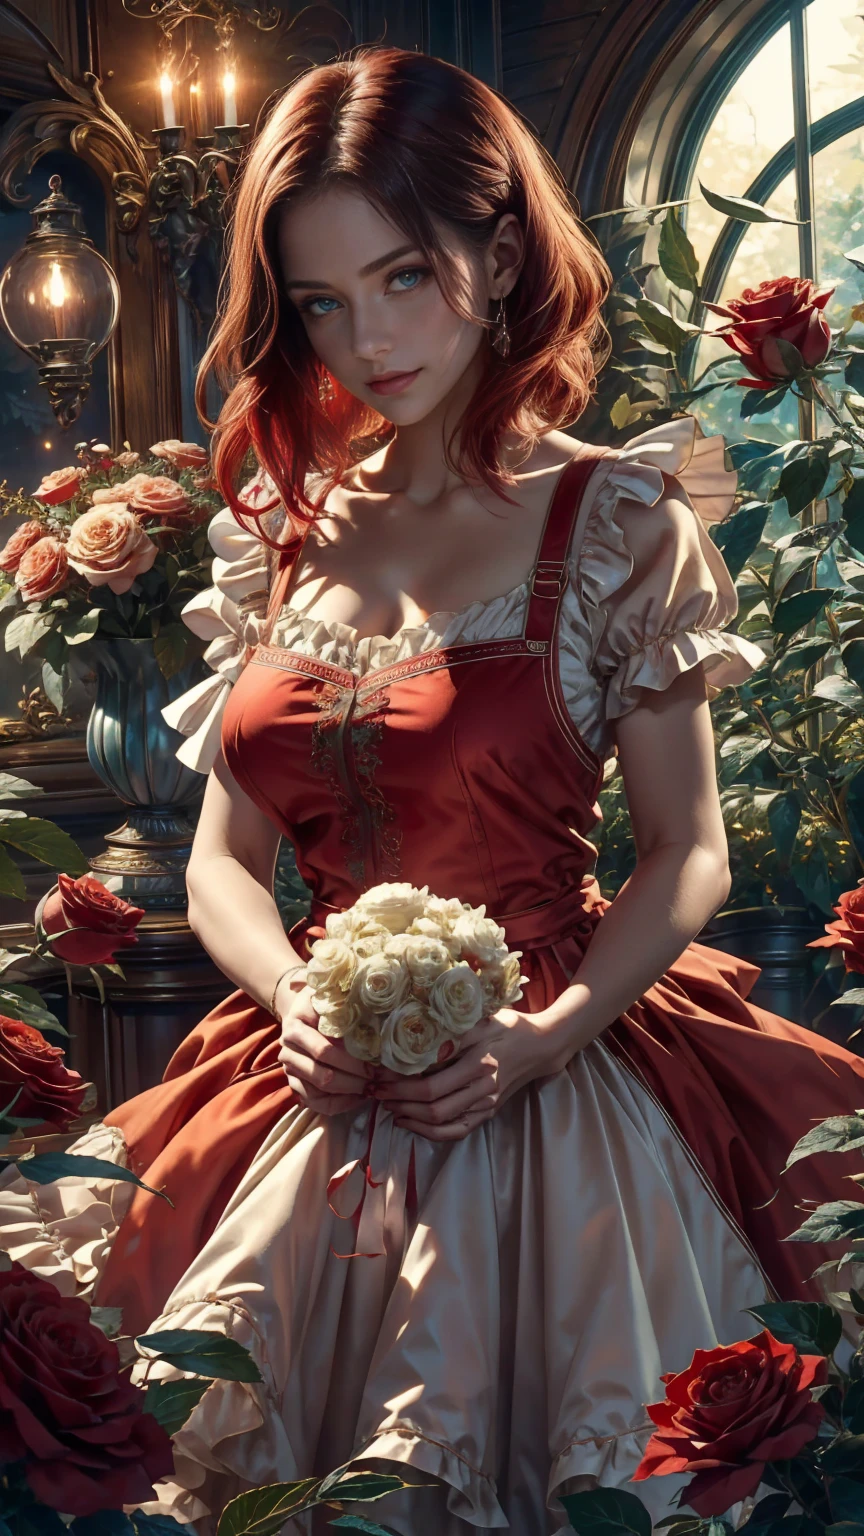 在奇境世界的中心，一位年轻美丽的女孩，有着红色和白色的短发, 花店服装和玫瑰围裙. 从她的魔法花园里剪下红玫瑰. 好奇心, 爱的姿势, 在仙境世界, 营造充满爱的氛围, 她周围充满着能量和魔力. 场景角度动态, 捕捉那一刻的紧张感, 优质绿眼睛, 眼睛看着相机, 极其详细, 美丽而赏心悦目, 杰作, 最佳质量得分, (分形艺术: 1.3), 极其详细 , 动态角度, 光线追踪, face 特写, 特写, 高视野, 粒子和硬光, 美丽的红玫瑰